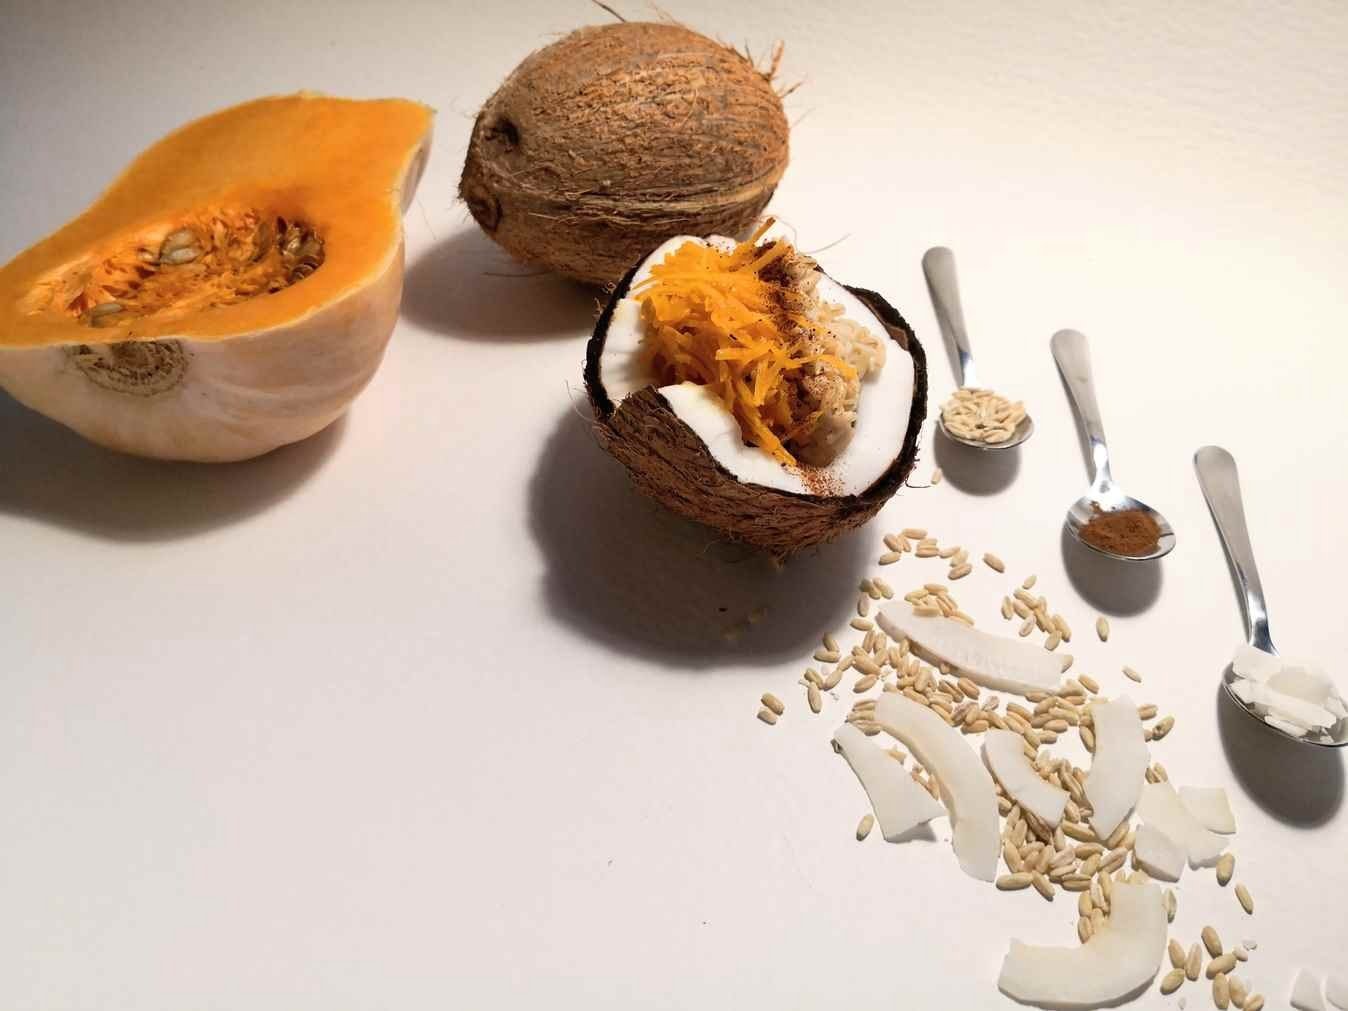 Avižos mirkytos kokosų piene ir gardinta moliūgu, cinamonu